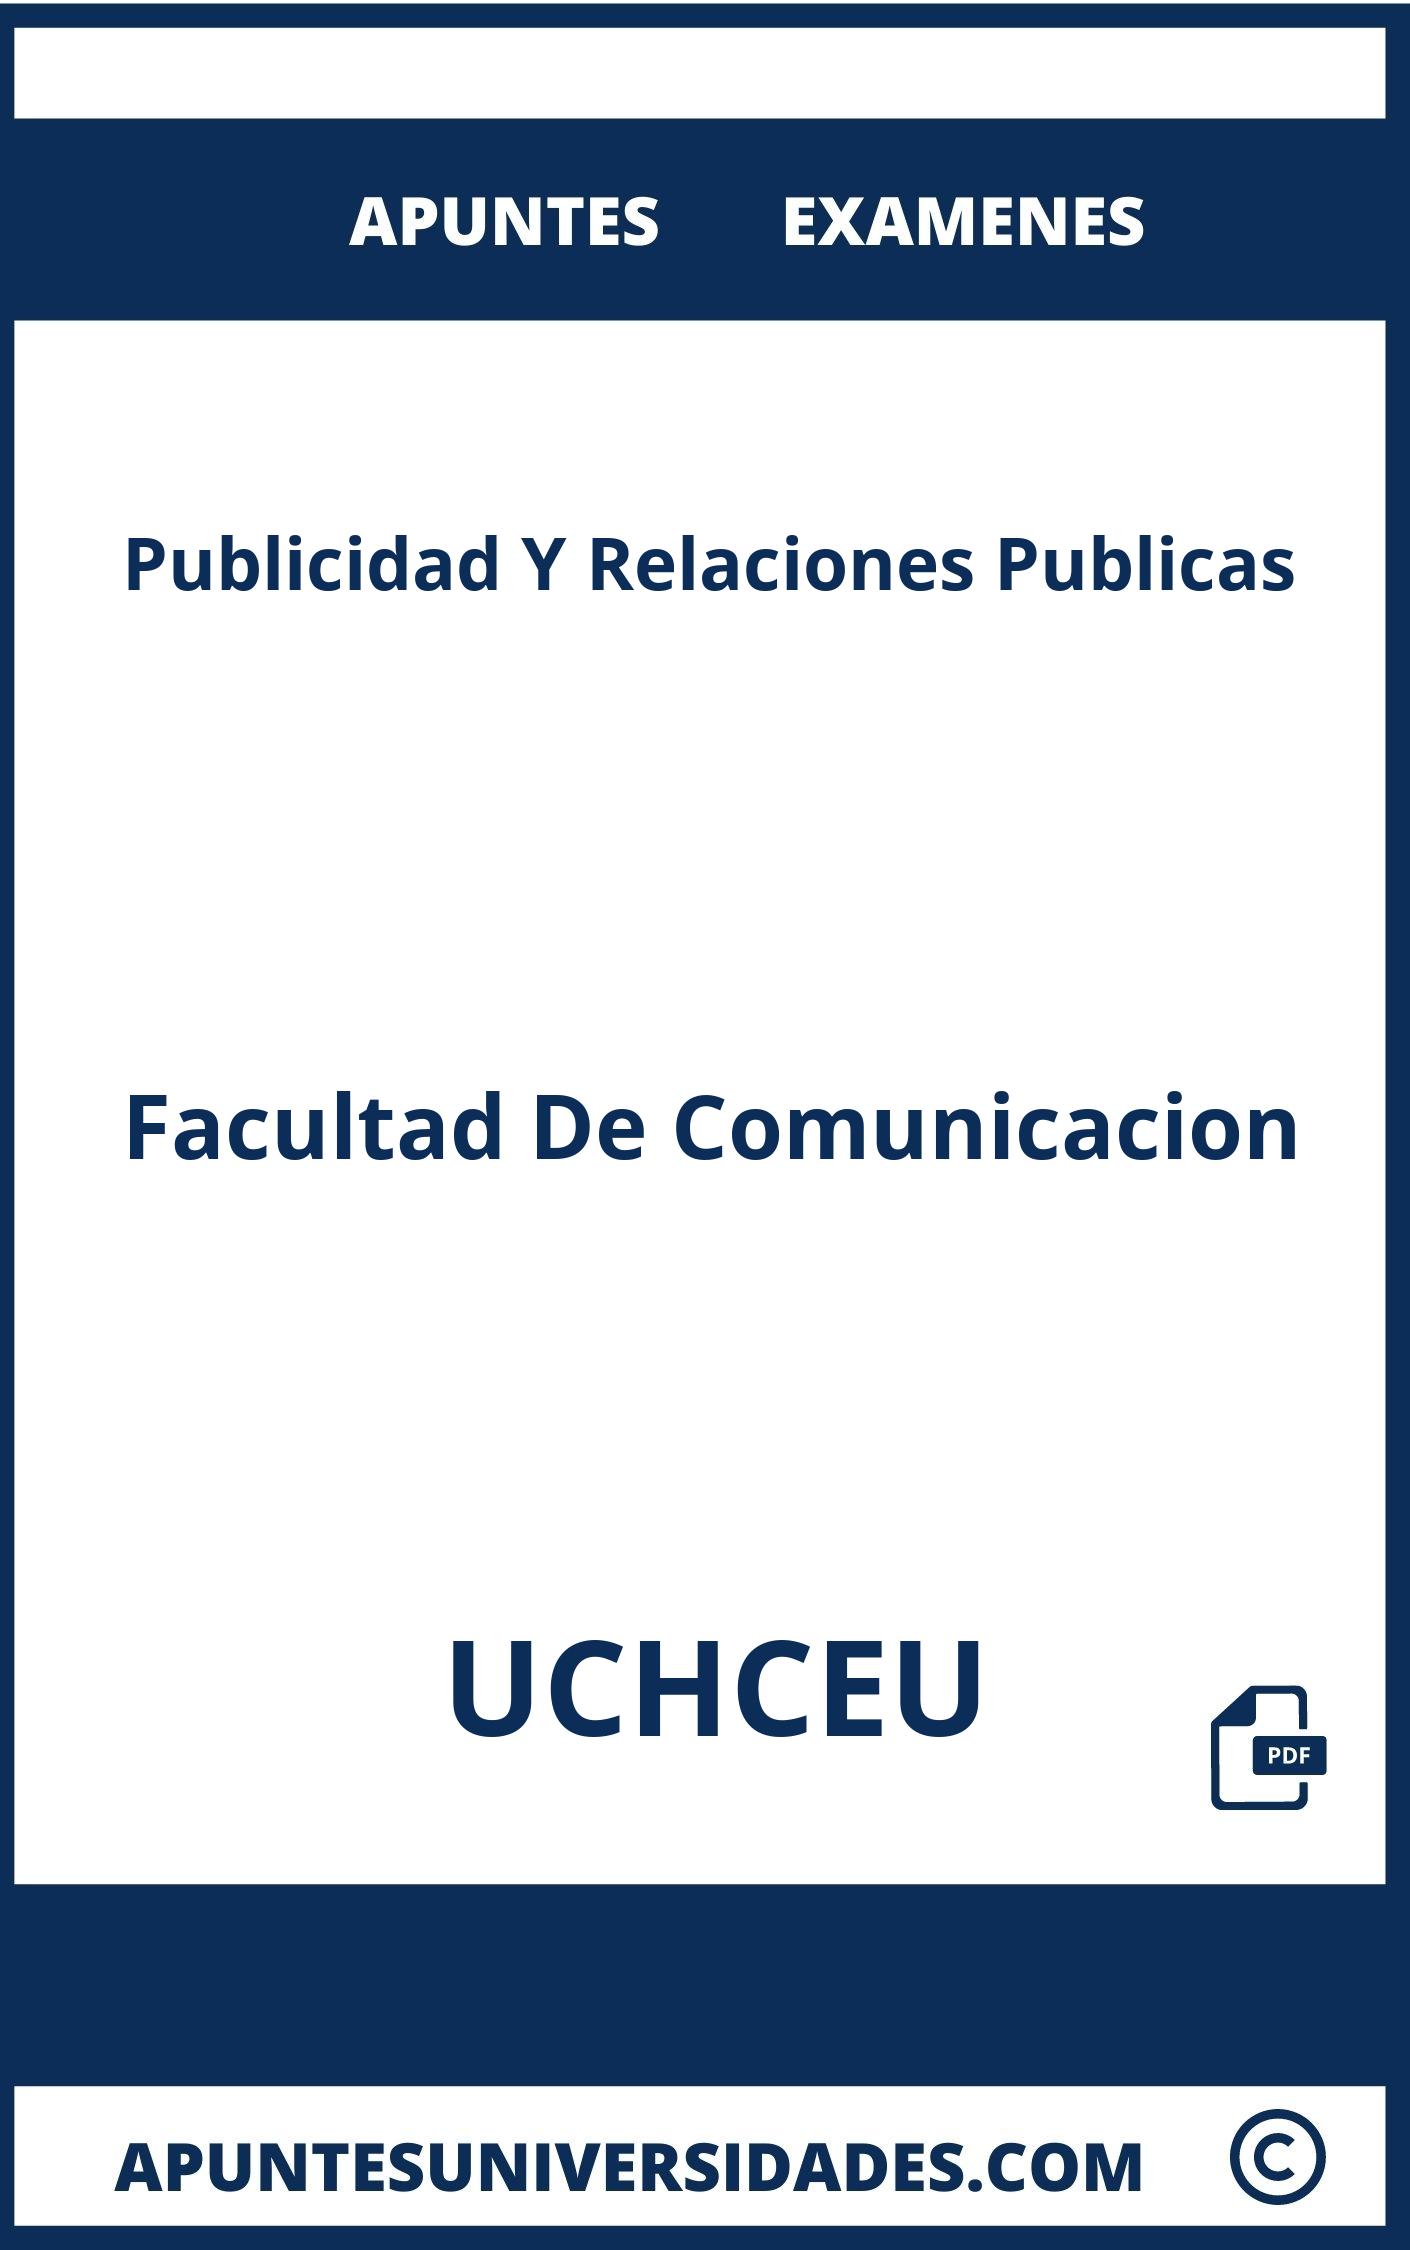 Apuntes y Examenes de Publicidad Y Relaciones Publicas UCHCEU